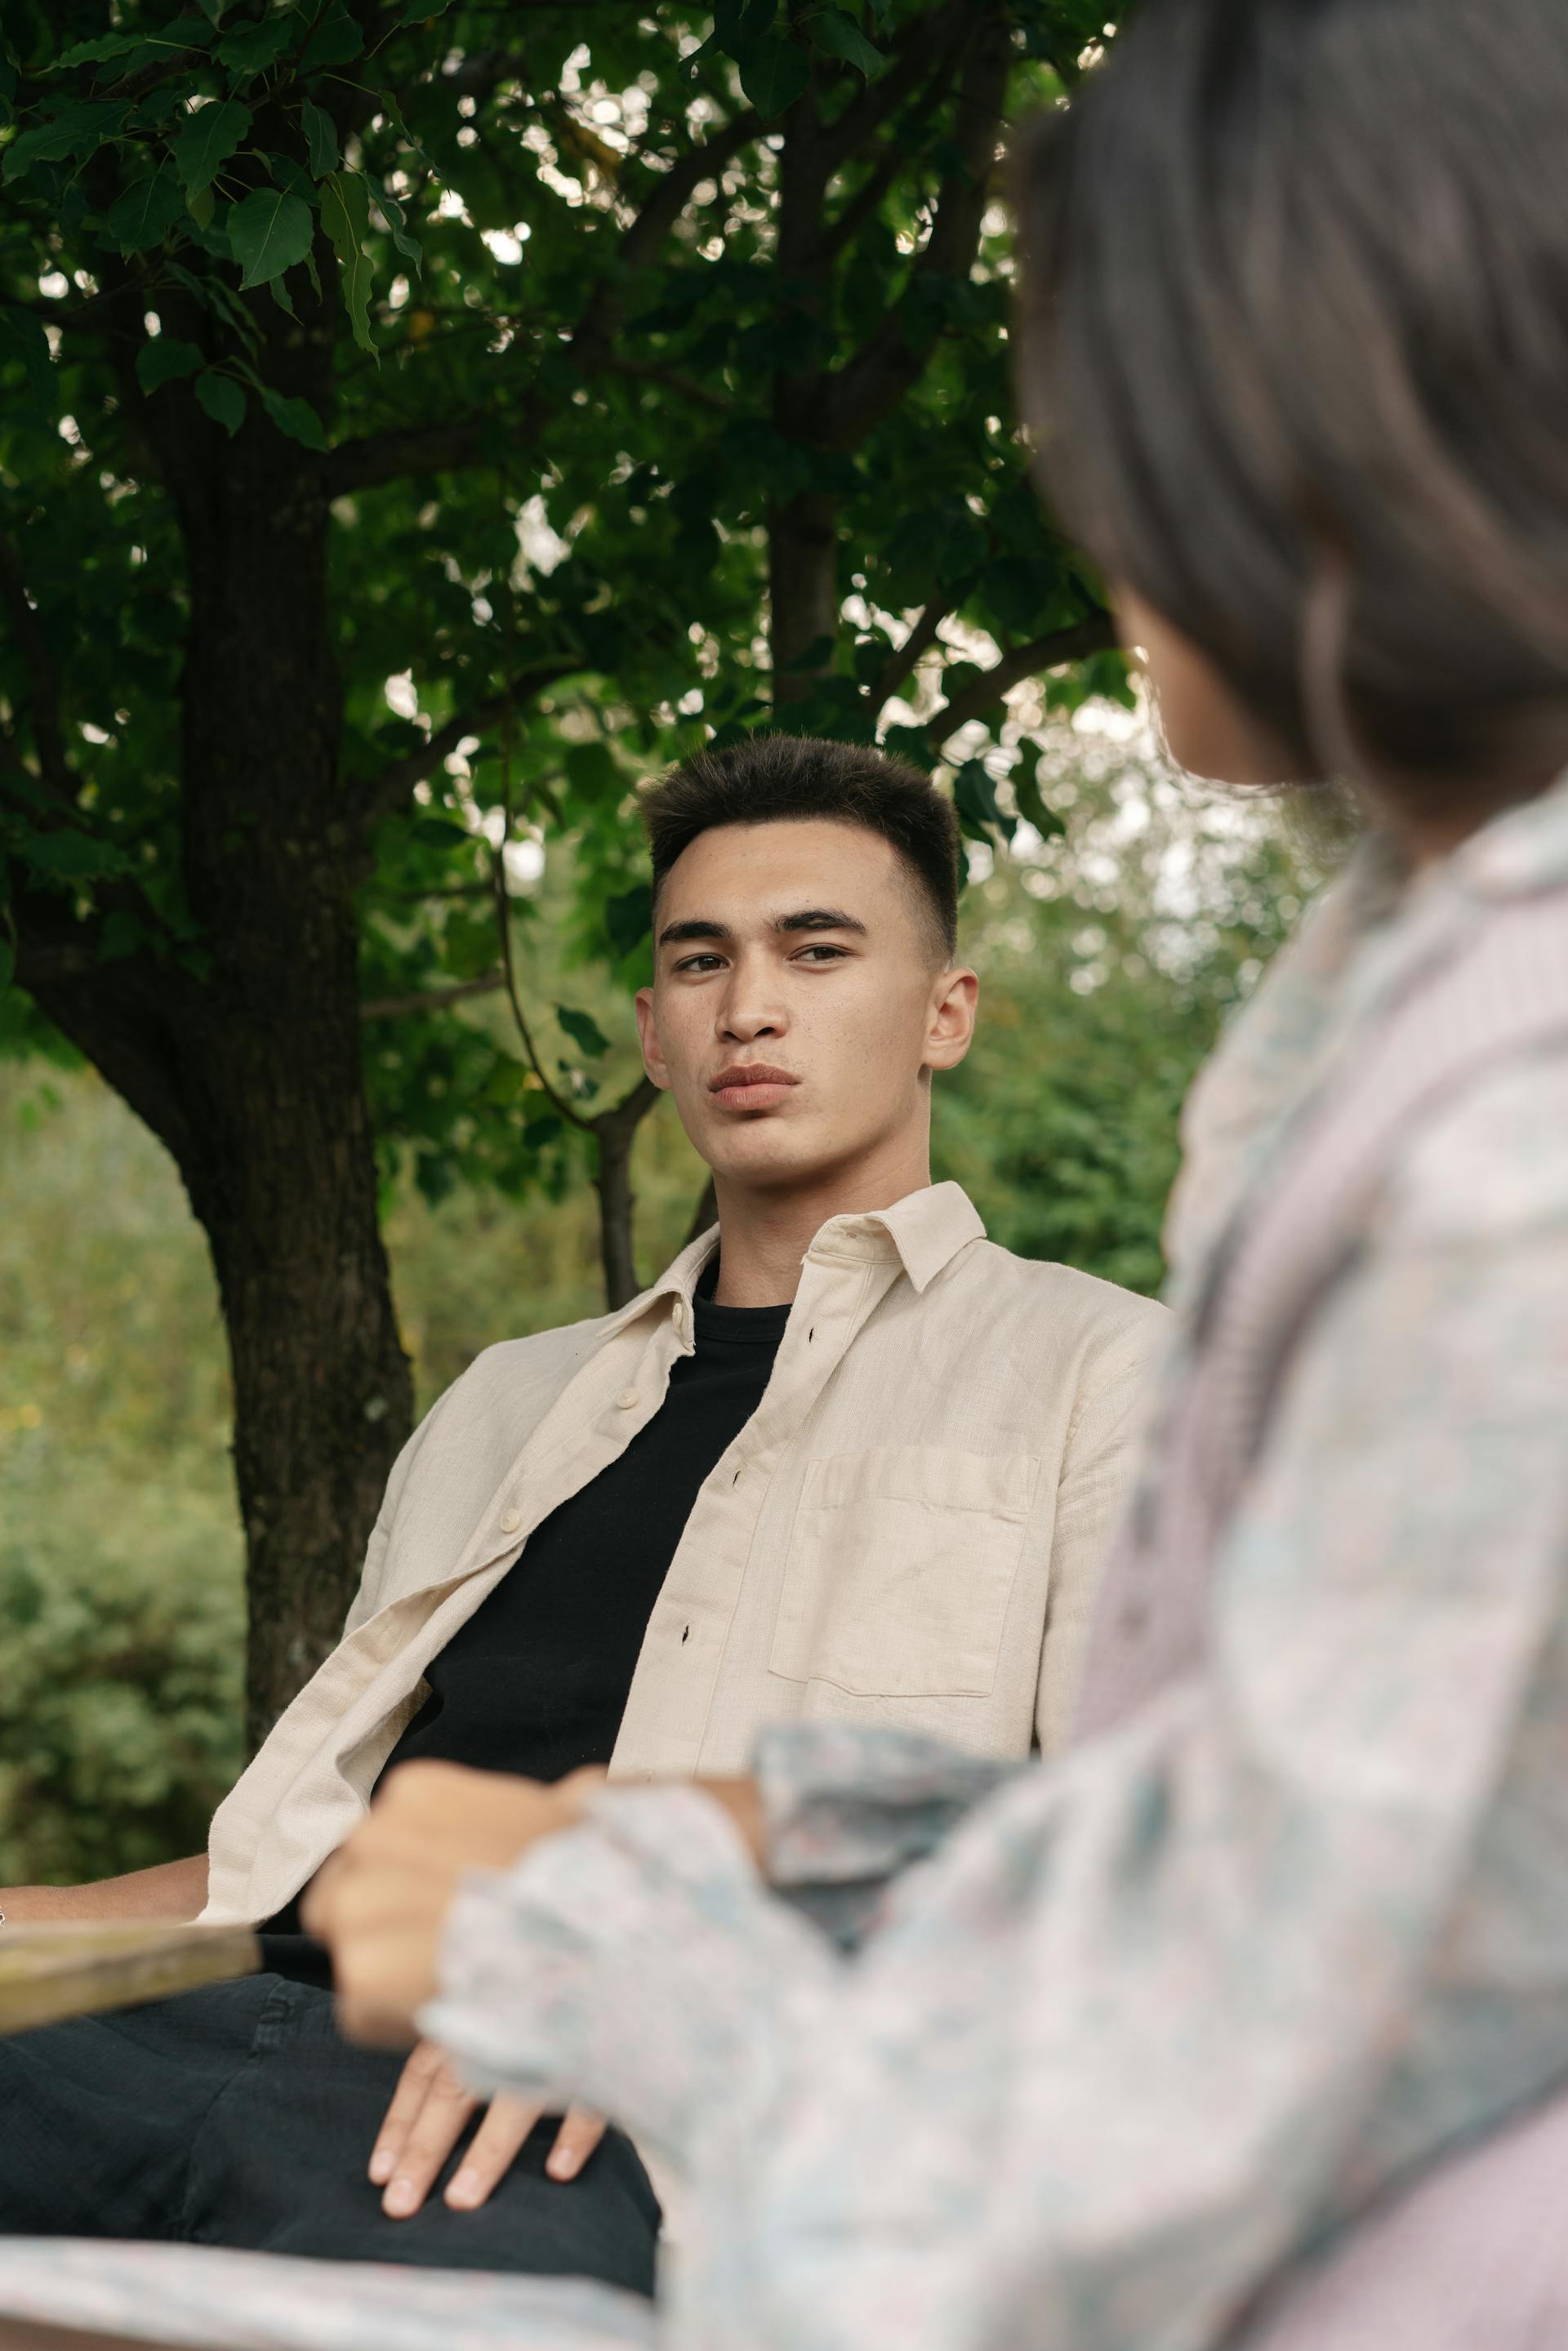 Un homme inquiet parle à une femme alors qu'il est assis à l'extérieur | Source : Pexels